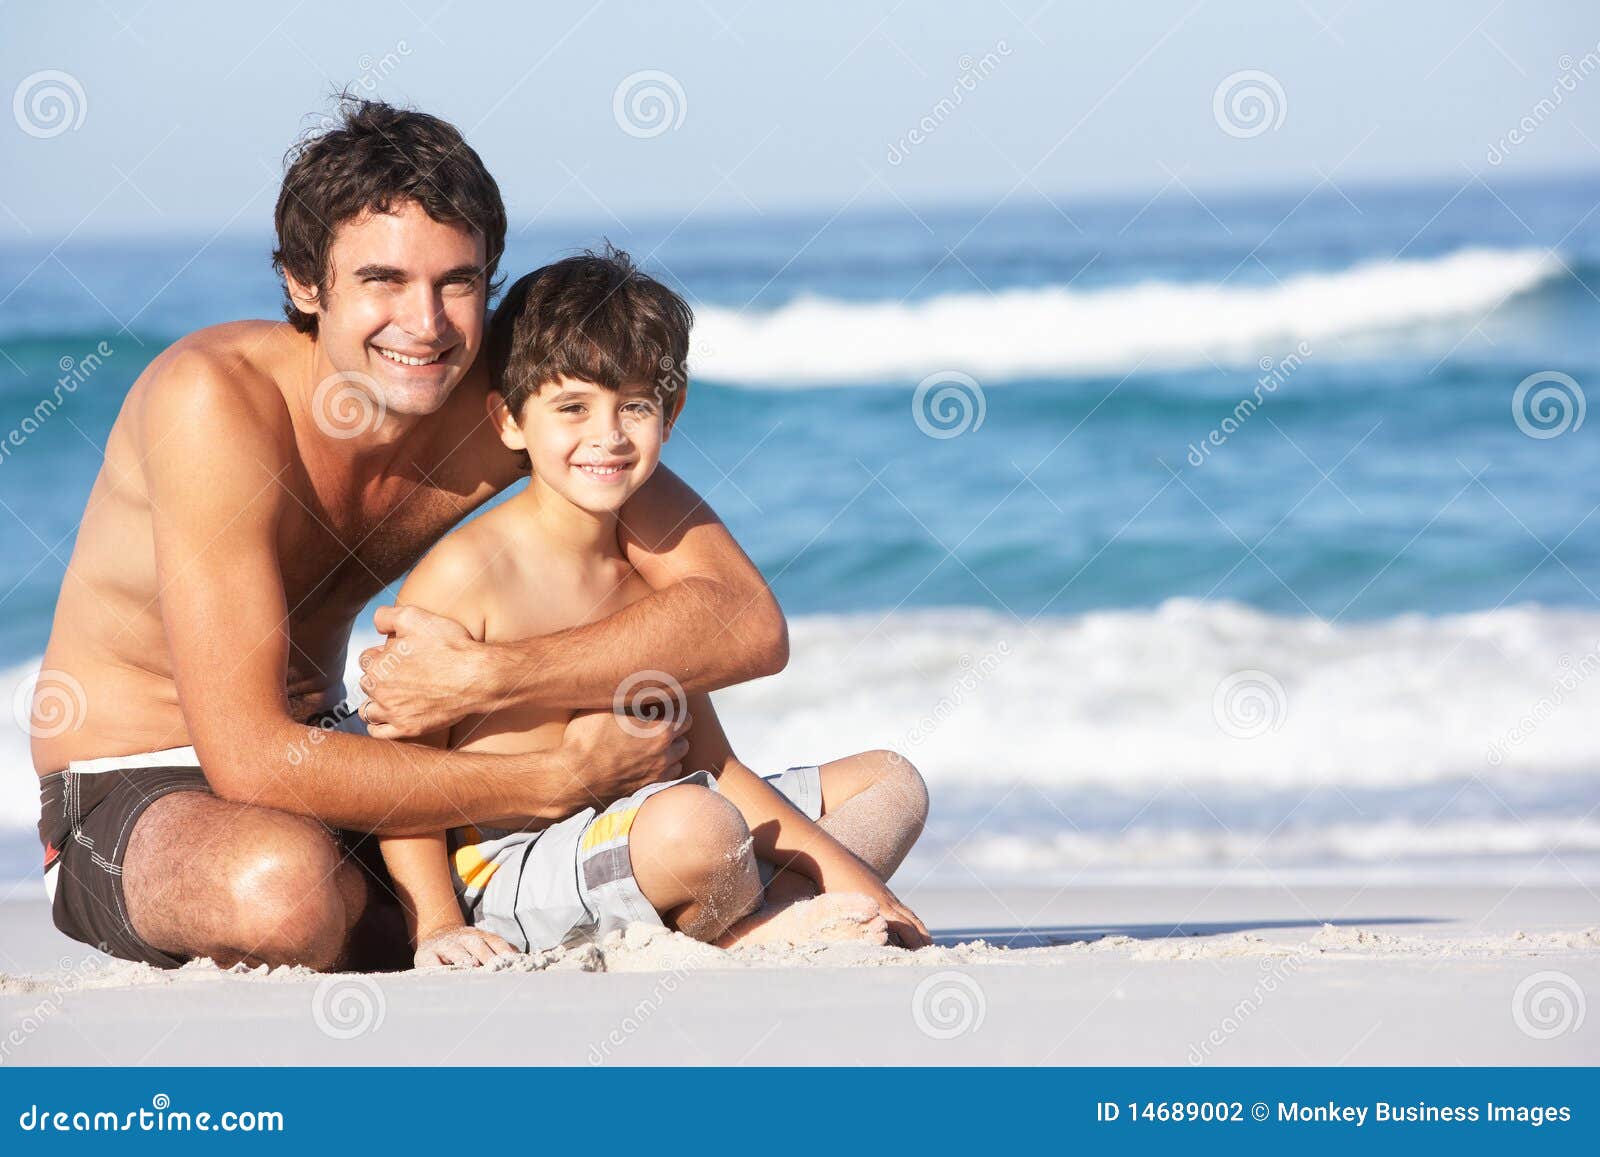 Папа сын в ванной. Фотосессия отец и сын на пляже. Папа на пляже на песке. Папа сын на берегу моря. Мальчик с папой на пляже.